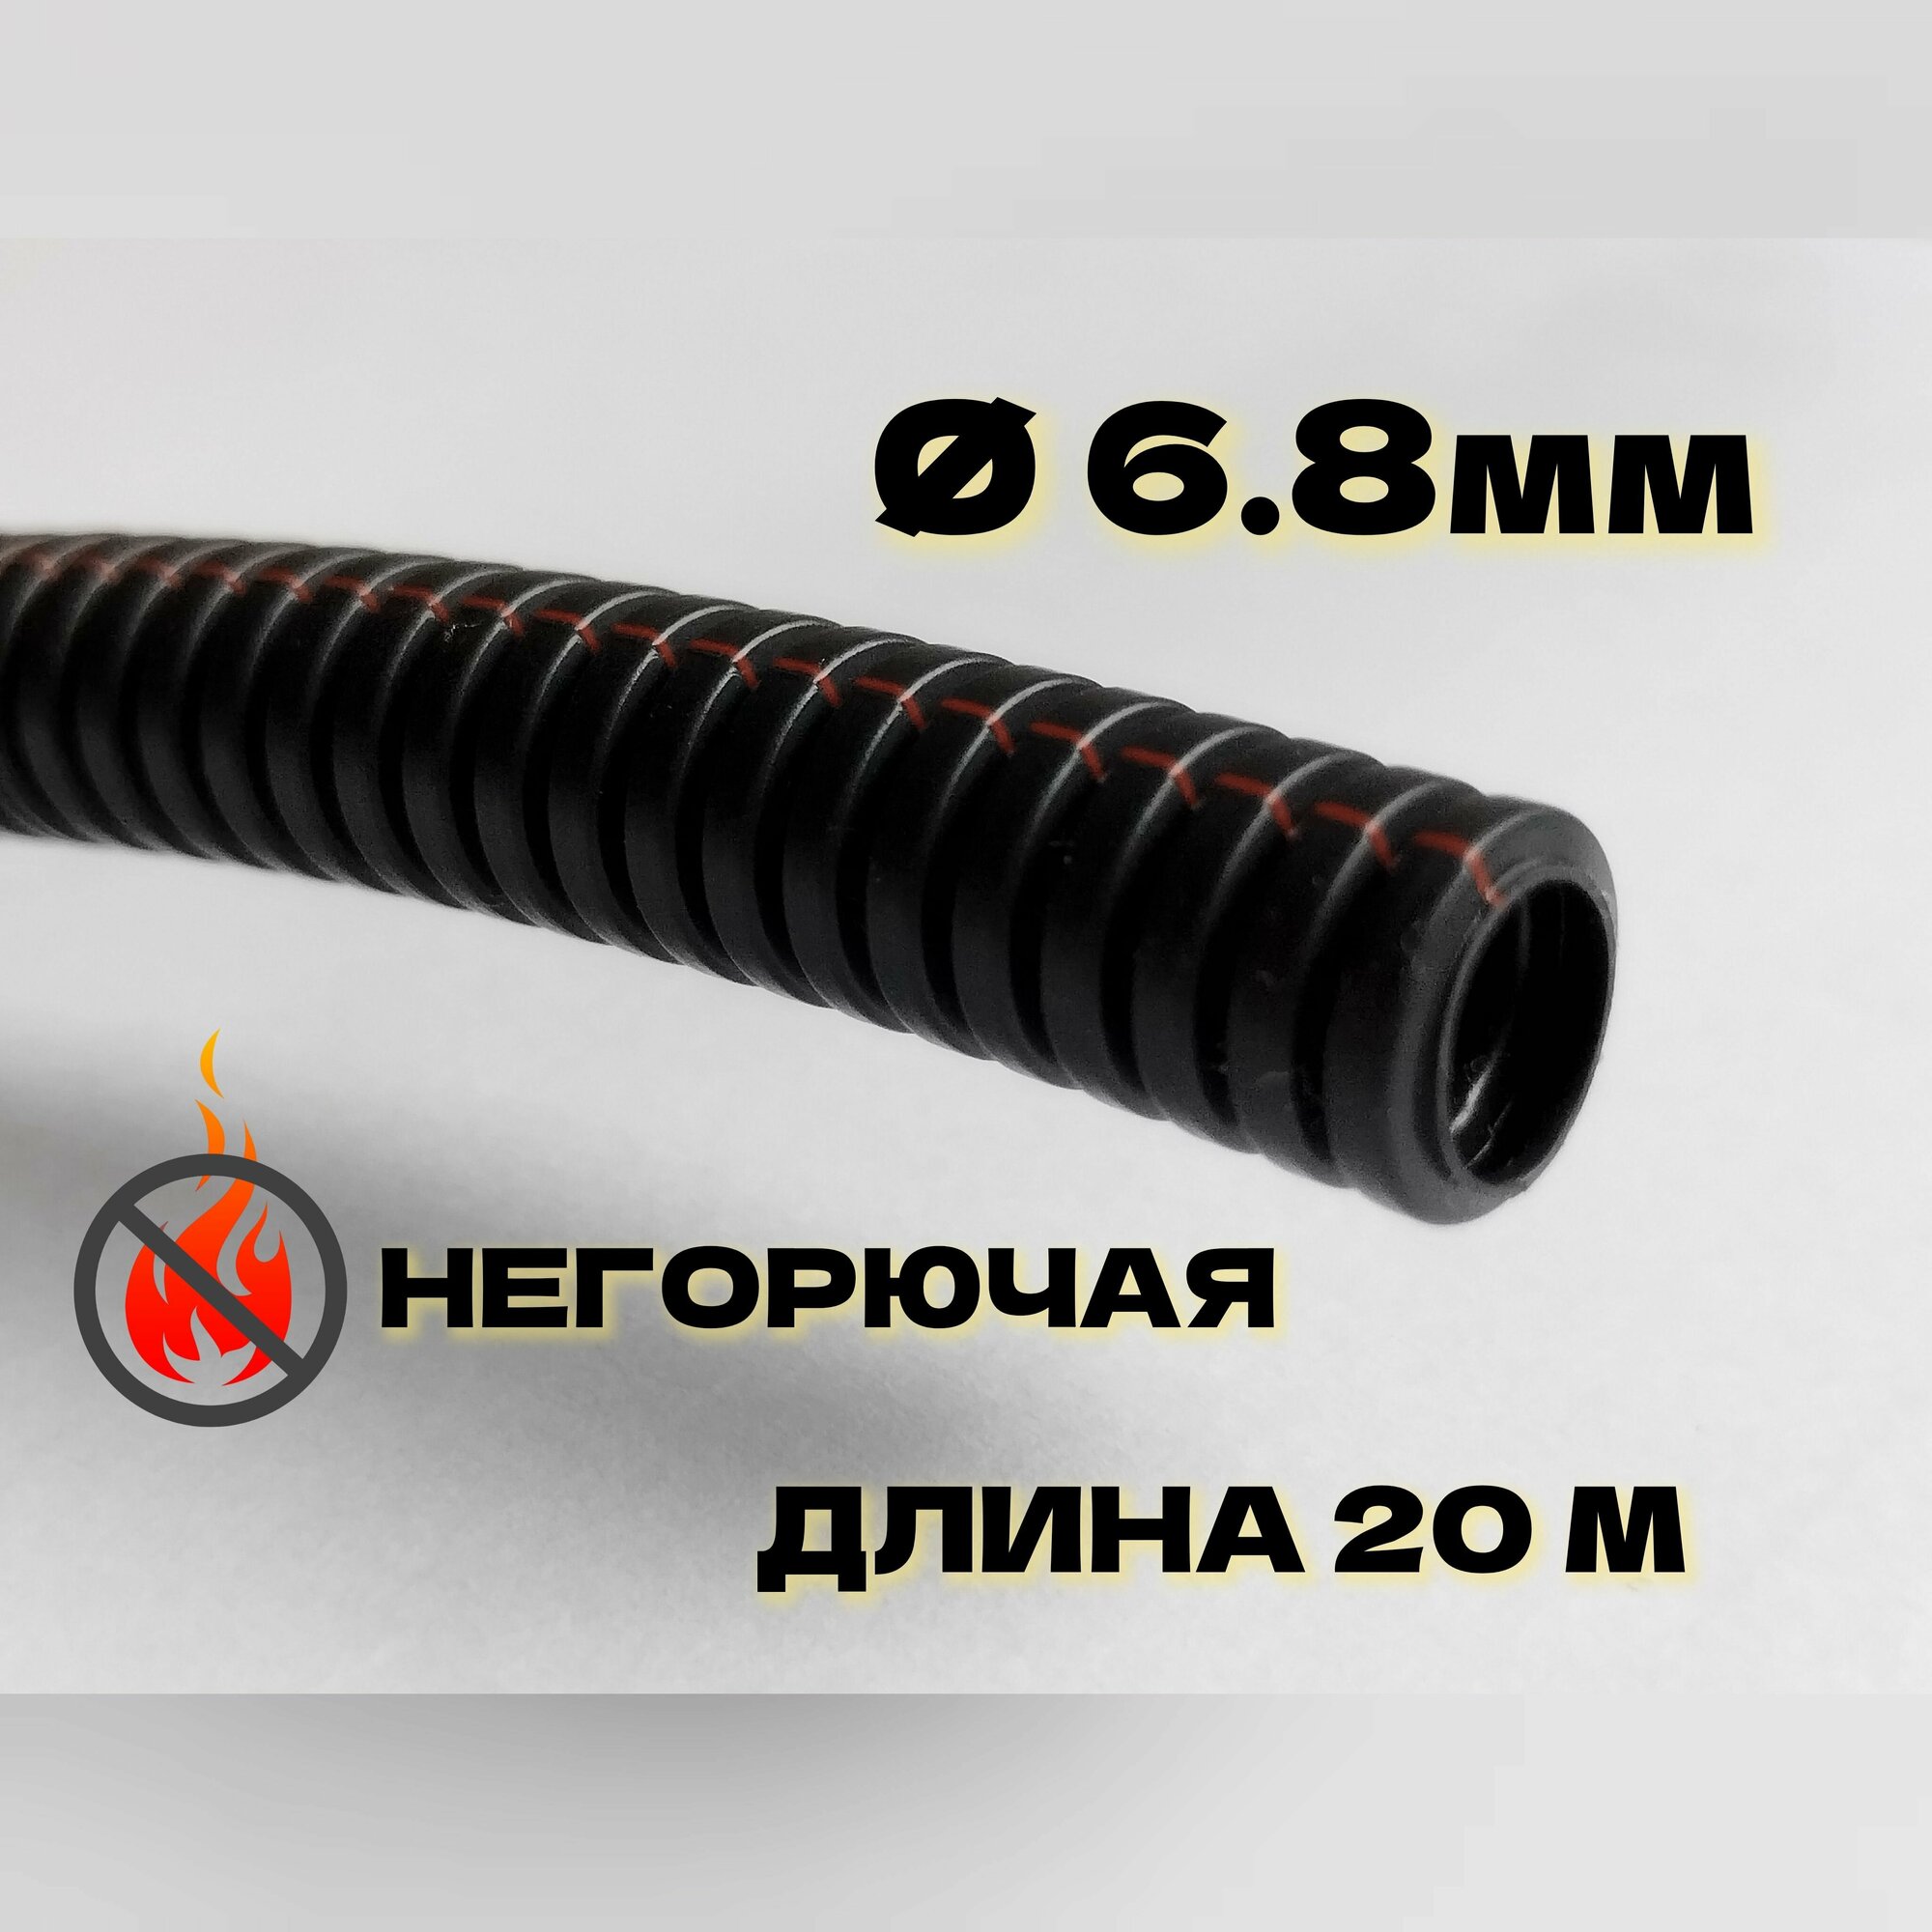 Автомобильная гофра для проводки неразрезная ПП тип В, 20 метров, d6.8мм, негорючая (DKC)